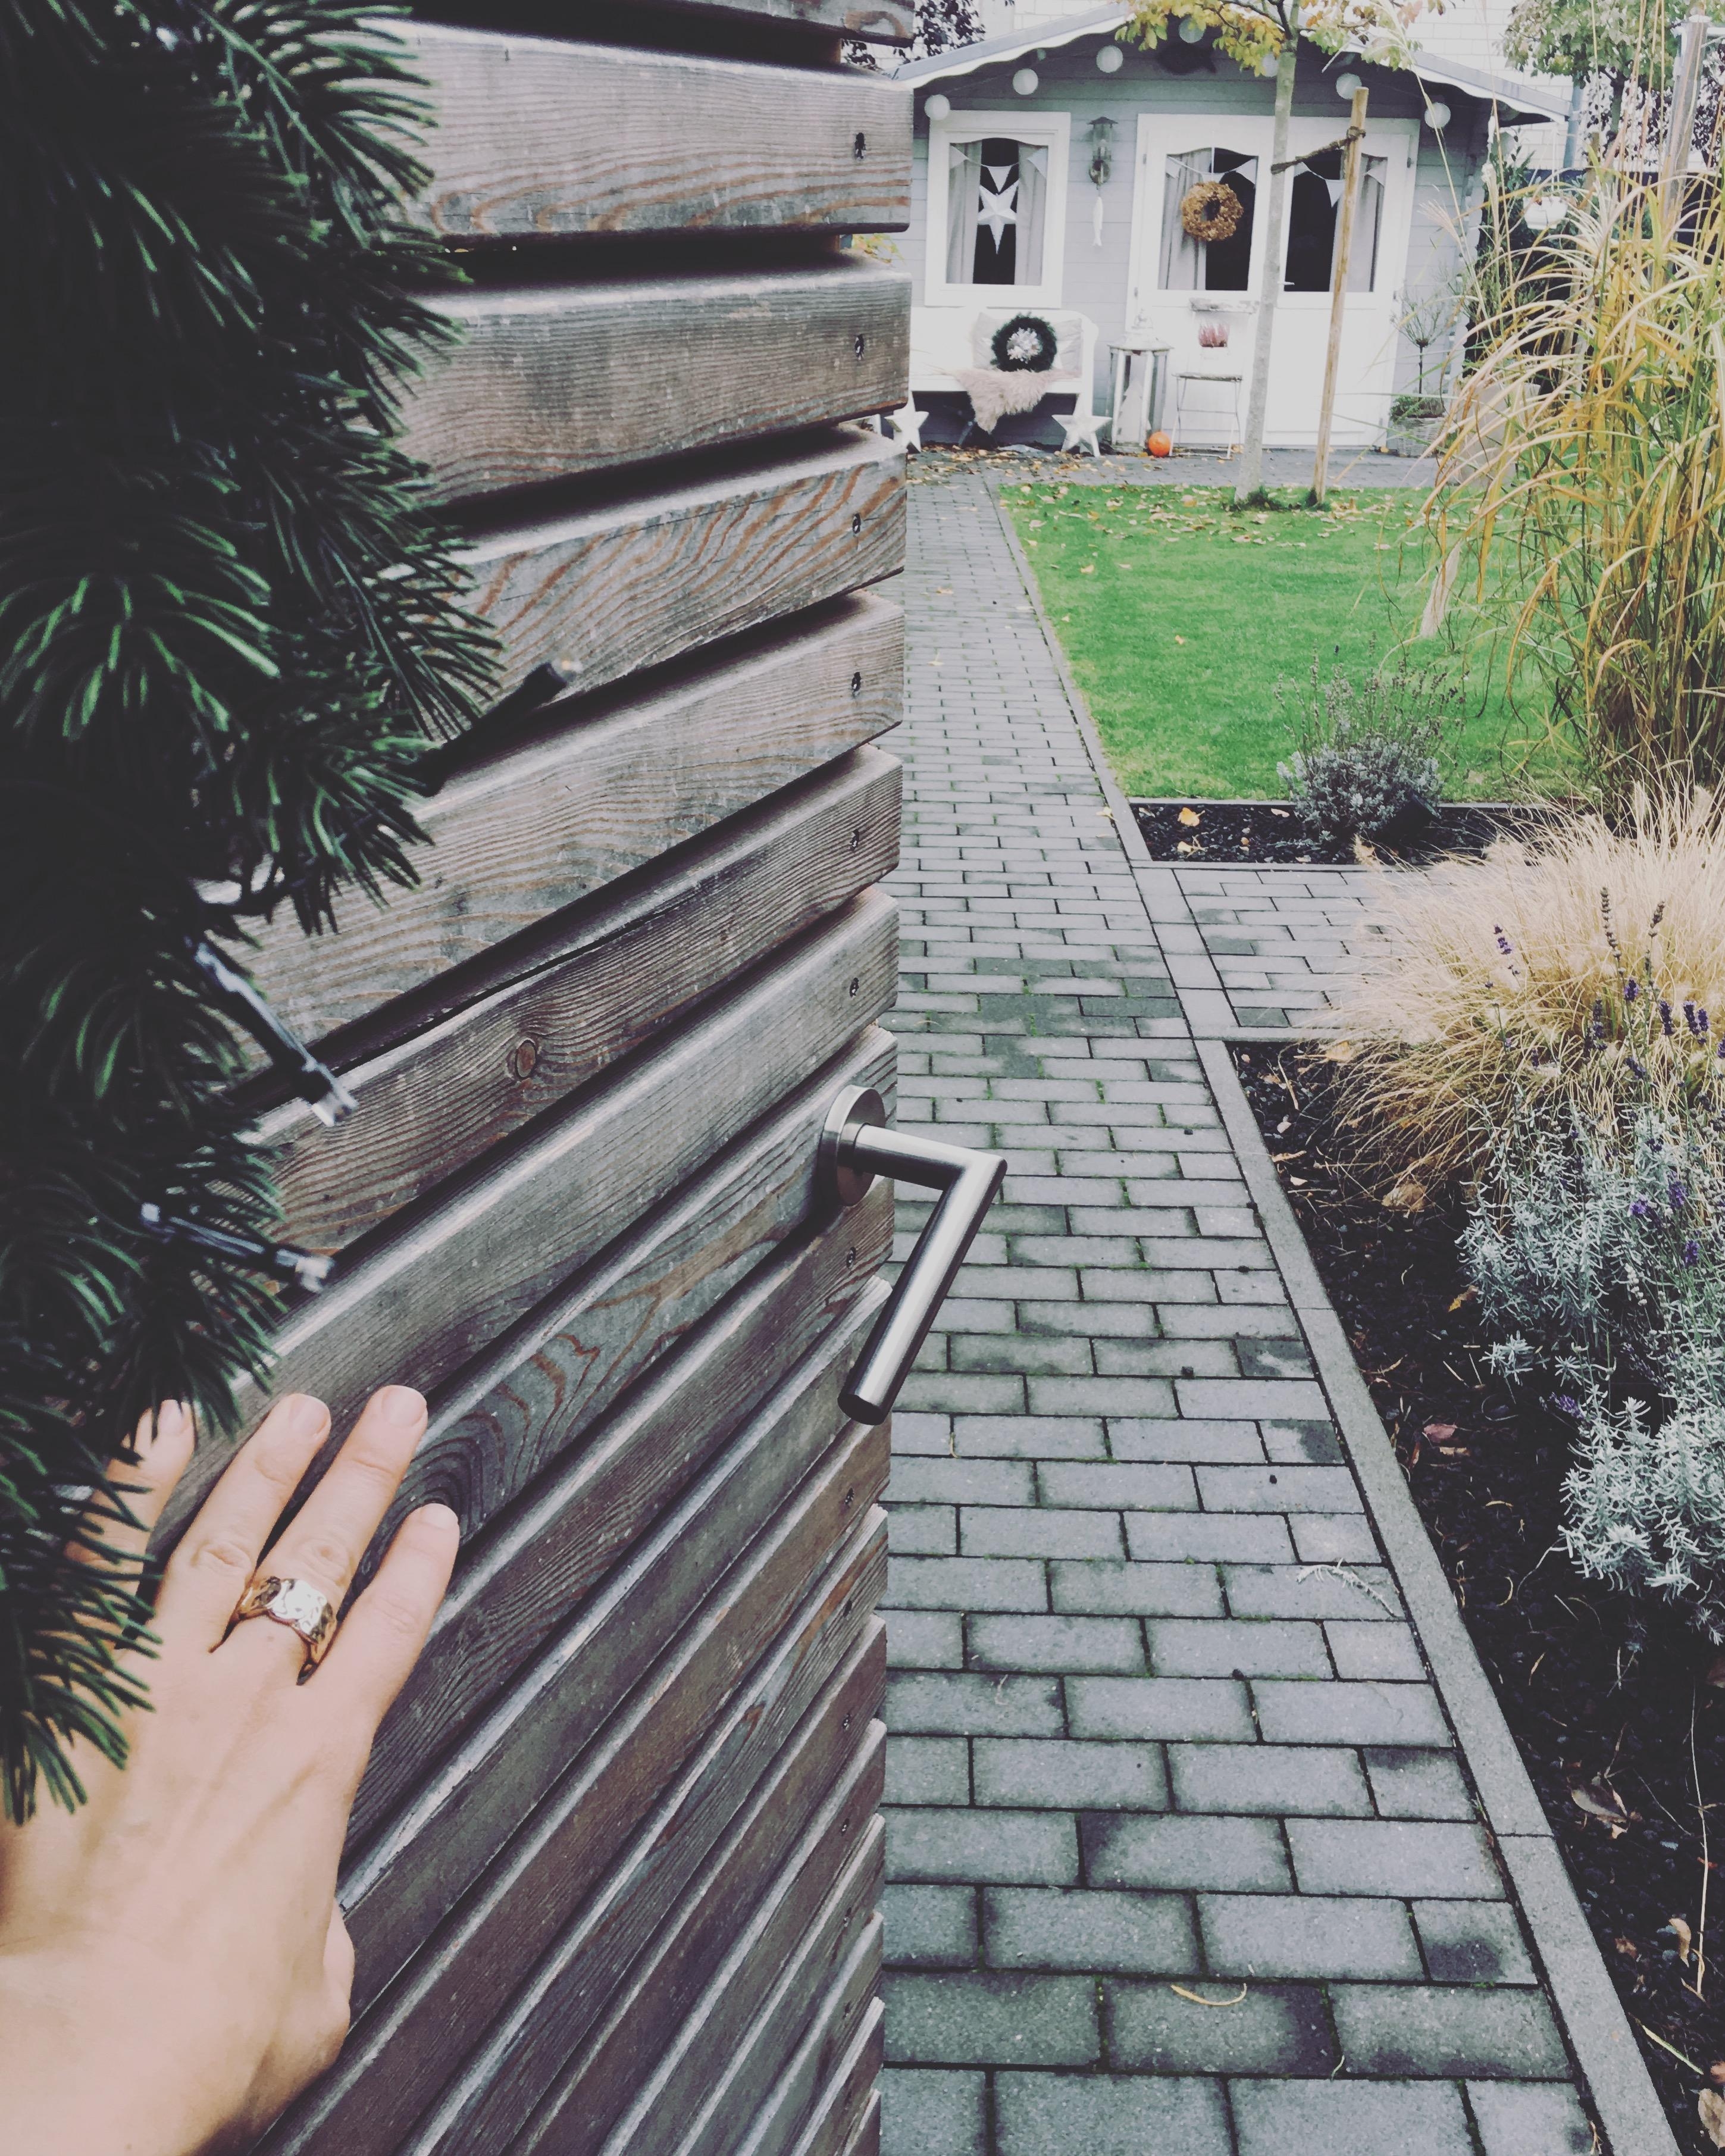 Ein kleiner Einblick in den Garten!😊 #garten #deko #gartendeko #Gartenhaus #hygge